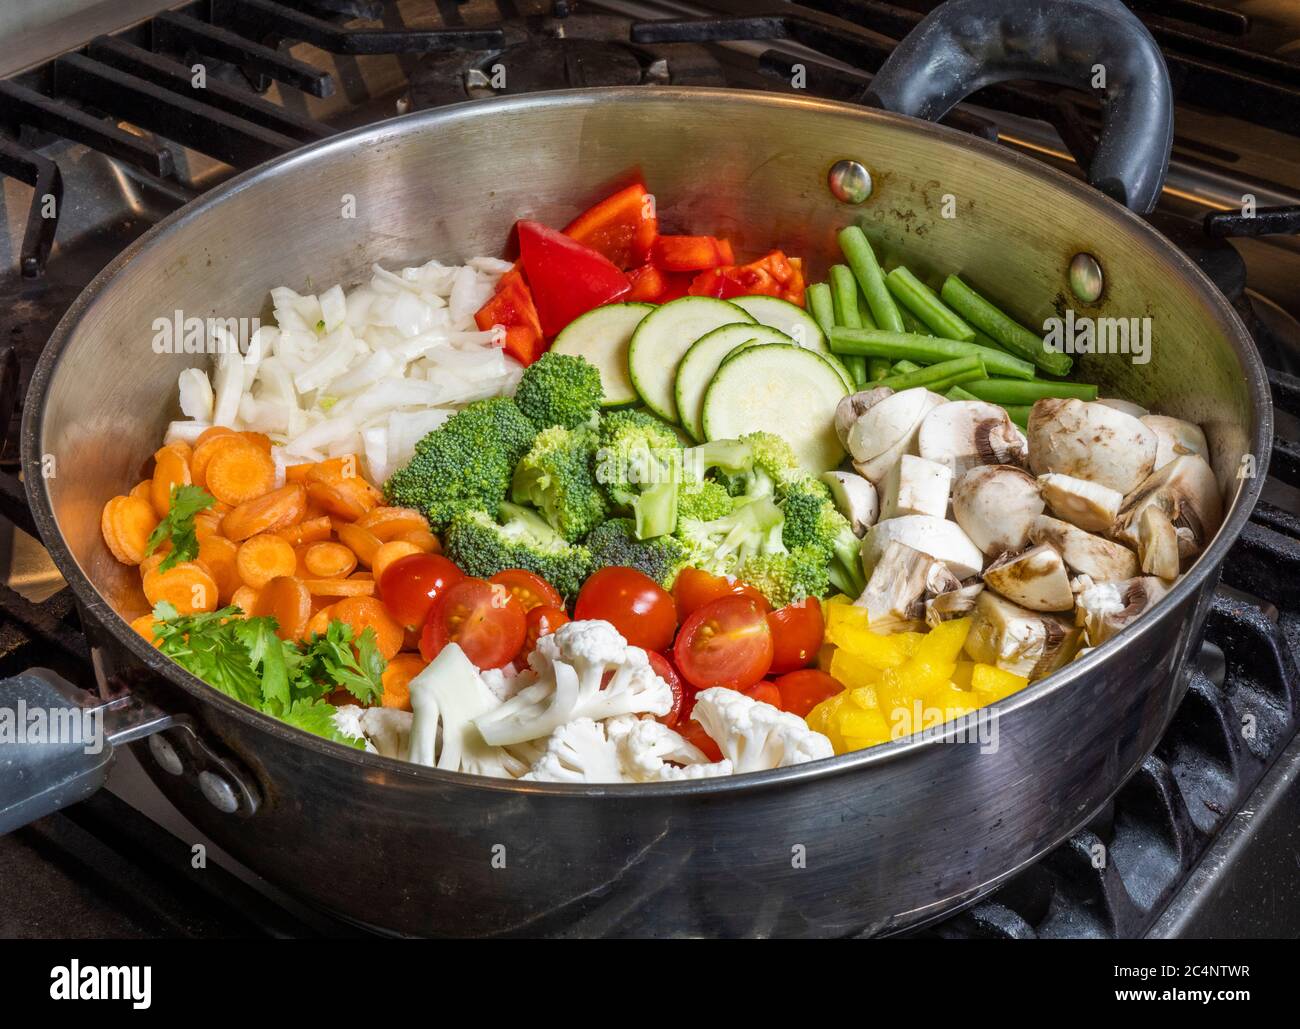 Una teglia rotonda in acciaio su un piano cottura, piena di verdure crude tagliate e tagliate a fette, pronta per essere cotte per la cena. Foto Stock